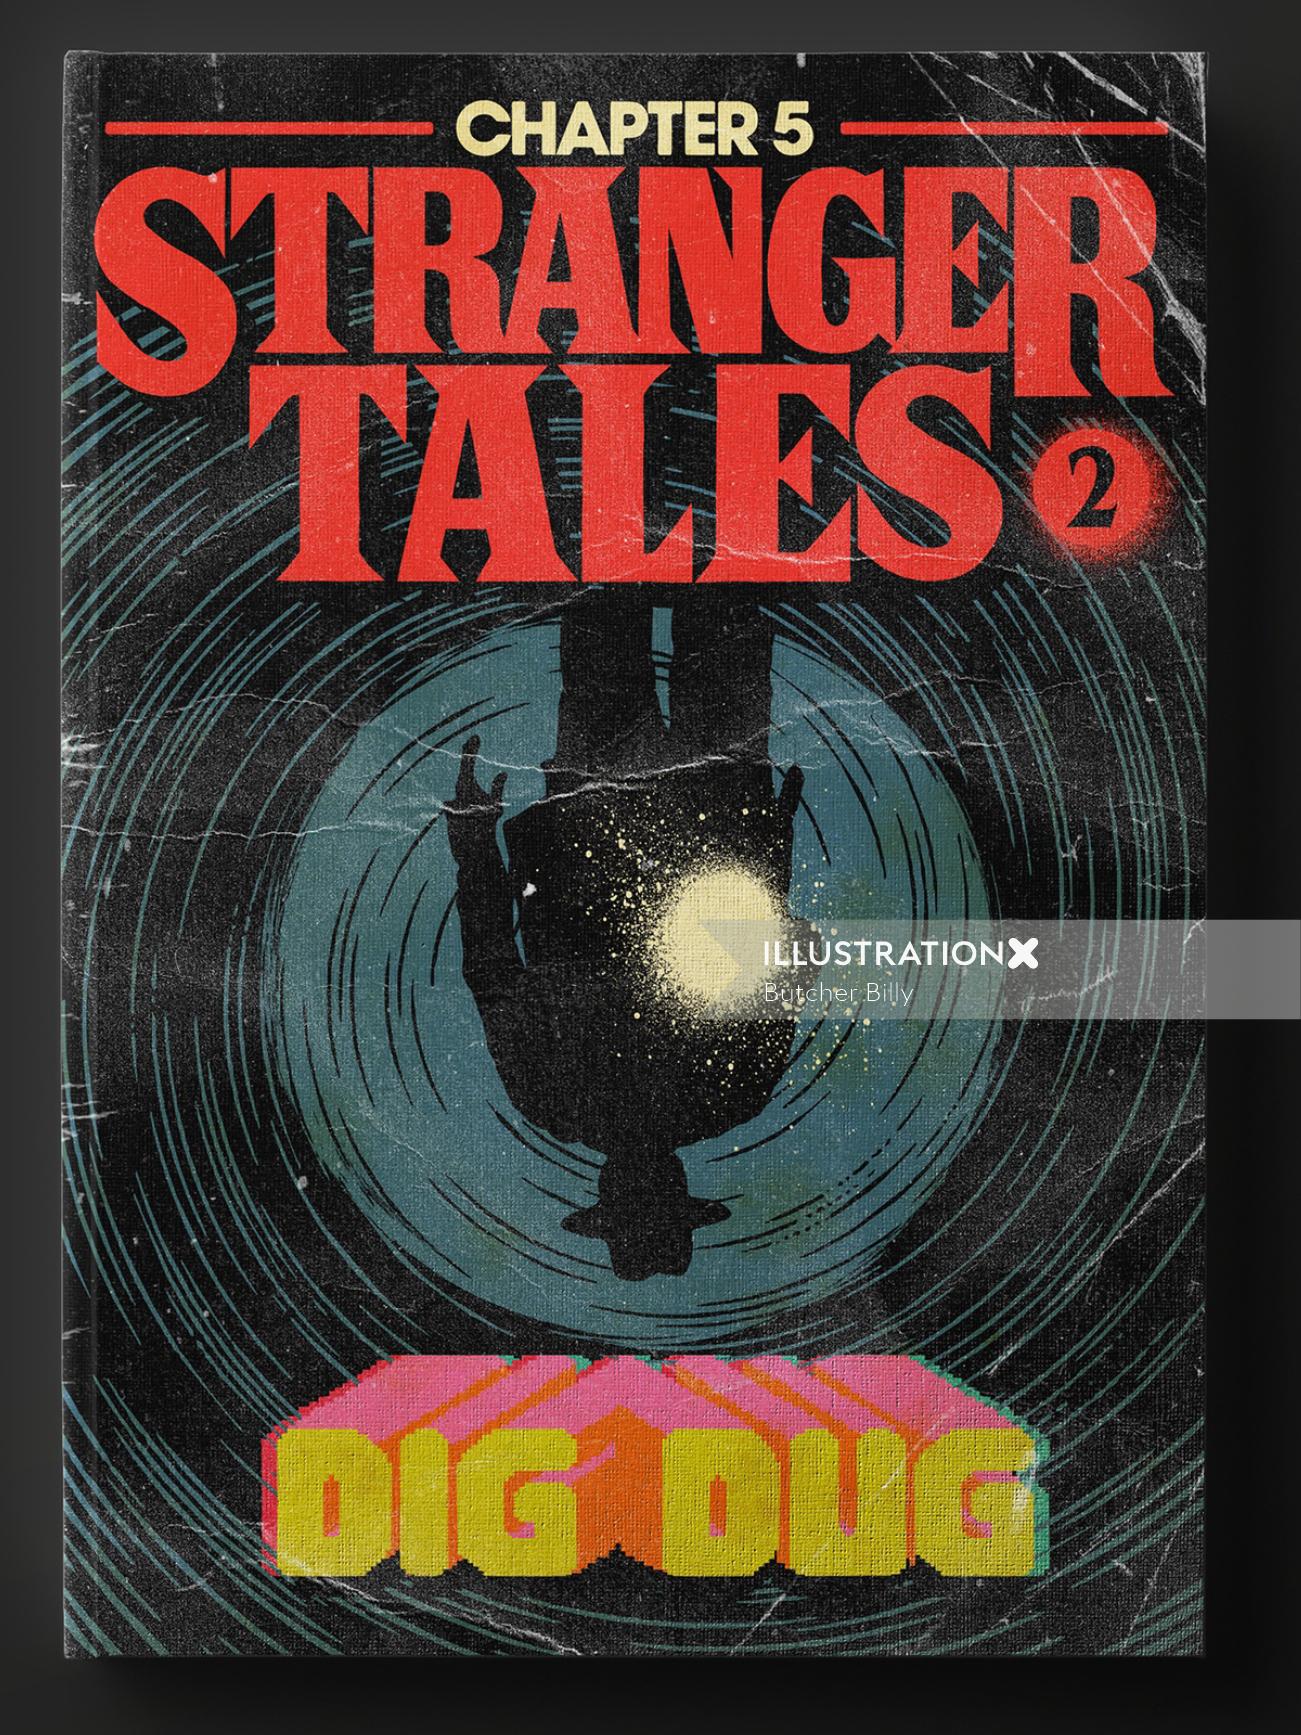 Cartel de la portada de la serie Stranger tales 2 dig dug